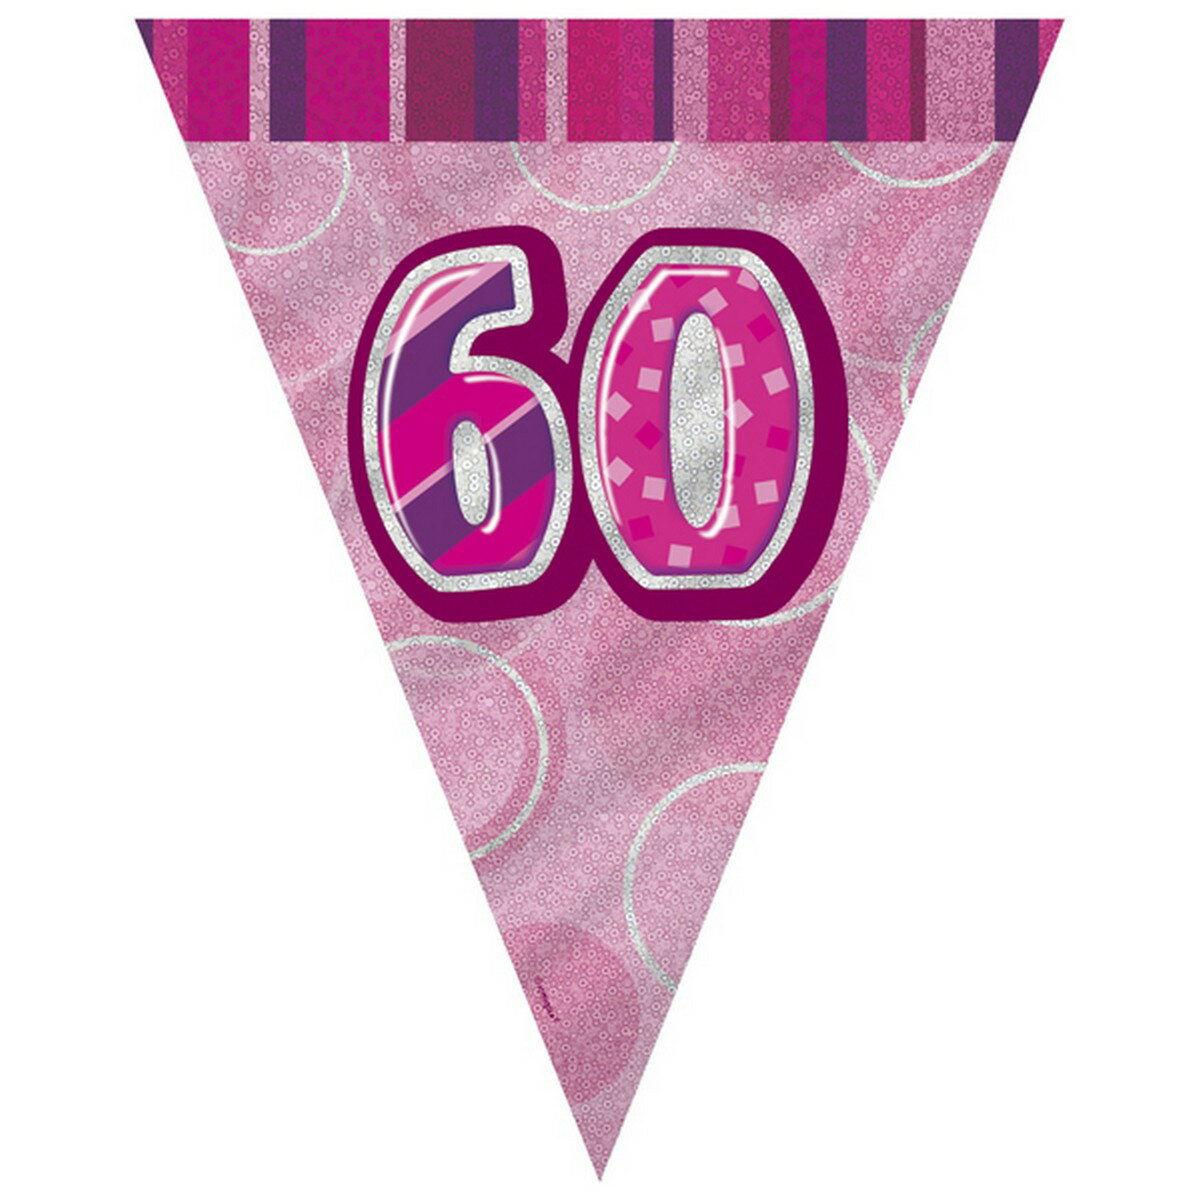 (ユニーク・パーティー) Unique Party ピンク 60歳の誕生日 Happy Birthday バナーガーランド 旗飾り デコレーション 【海外通販】